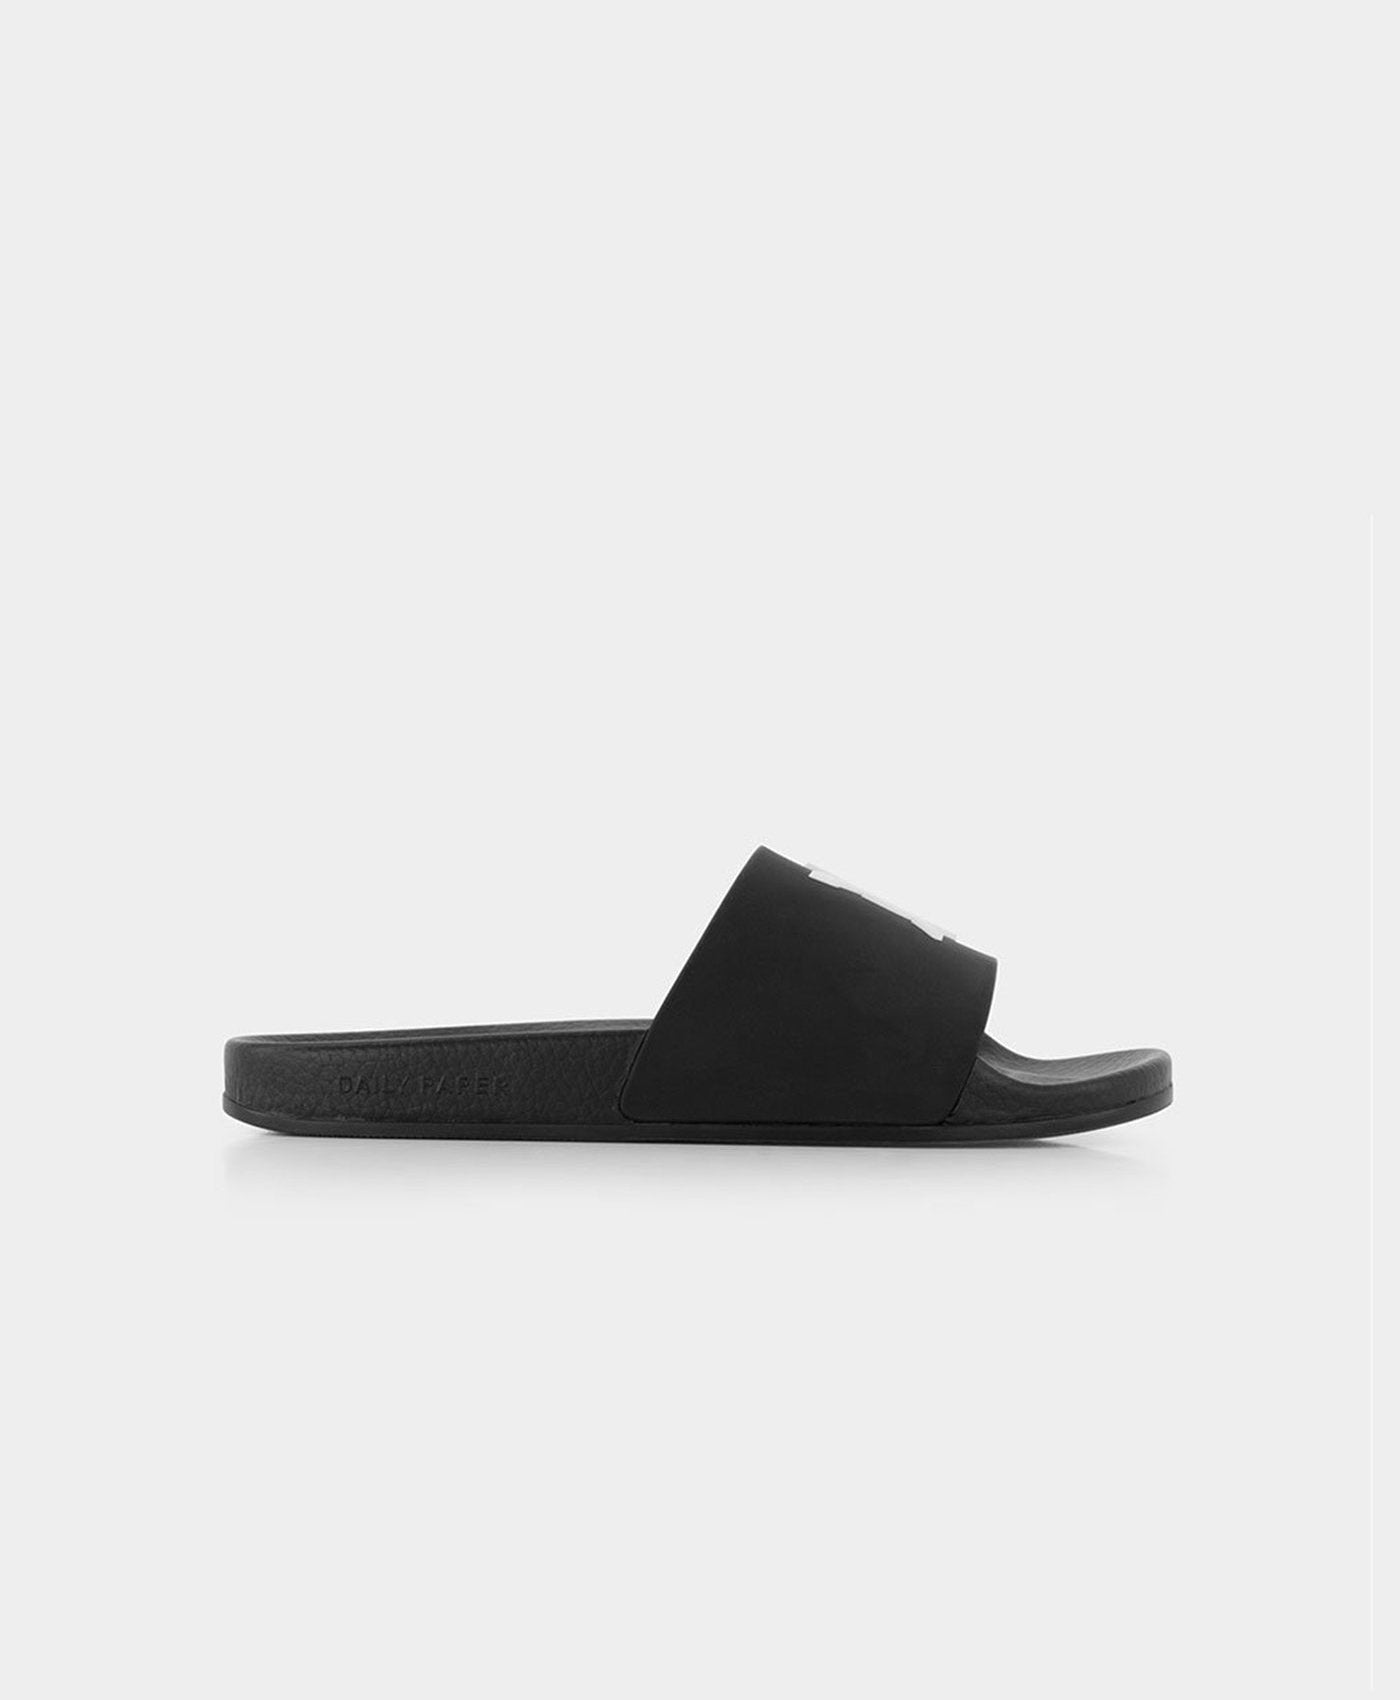 DP - Black Reslider Sandals - Packshot